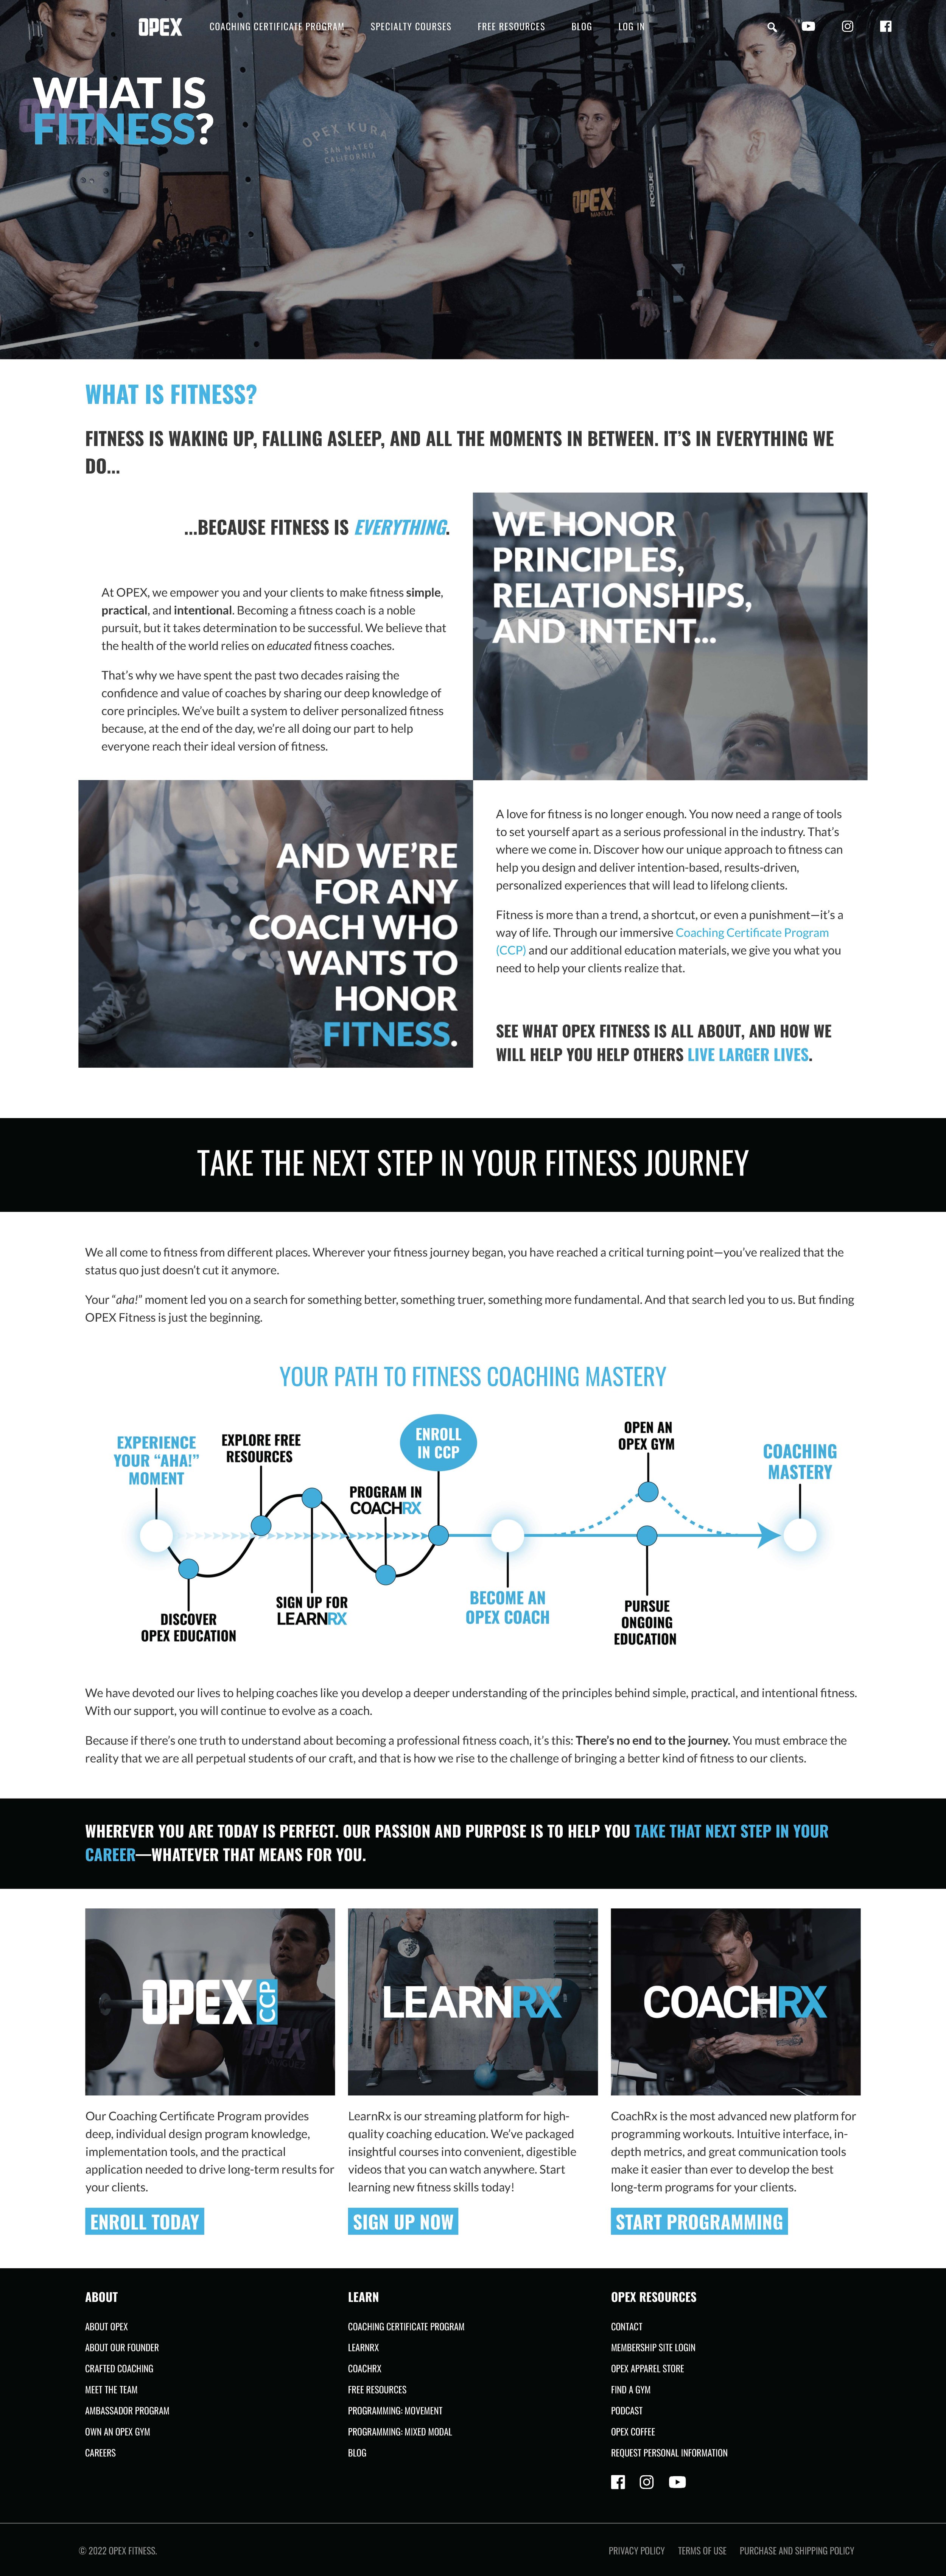 OPEX Fitness Homepage.jpg